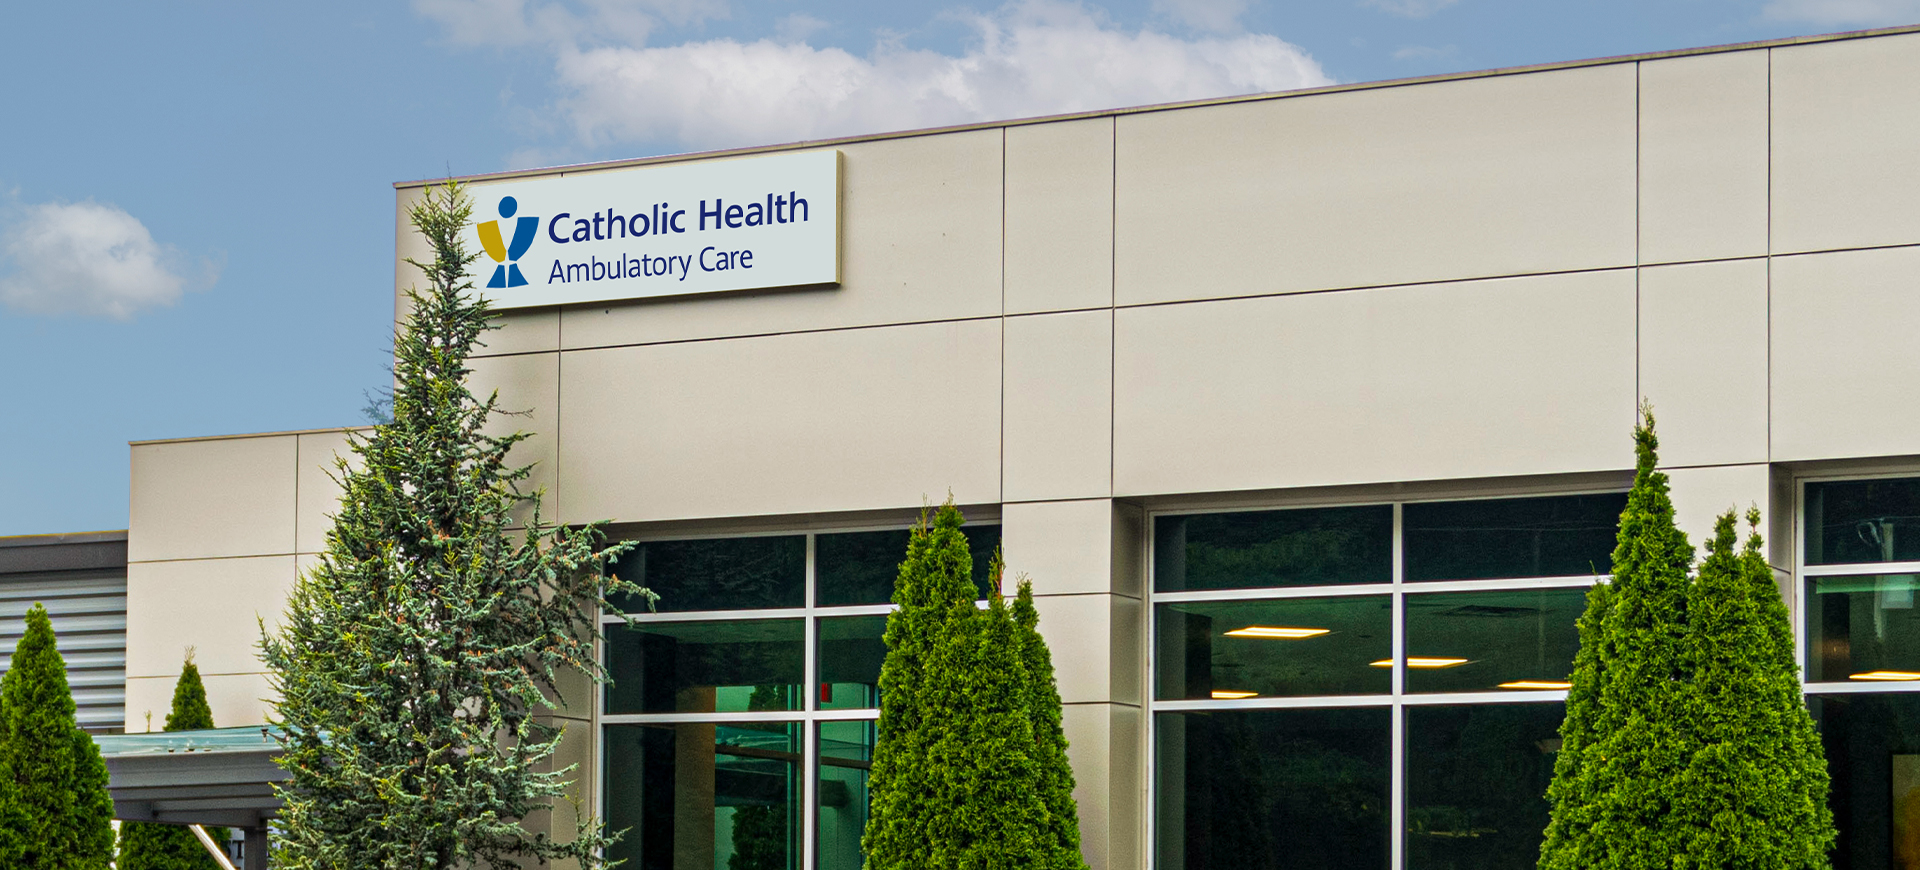       	        
	  	  Catholic Health Ambulatory Care at East Hills 
	  	  
	        